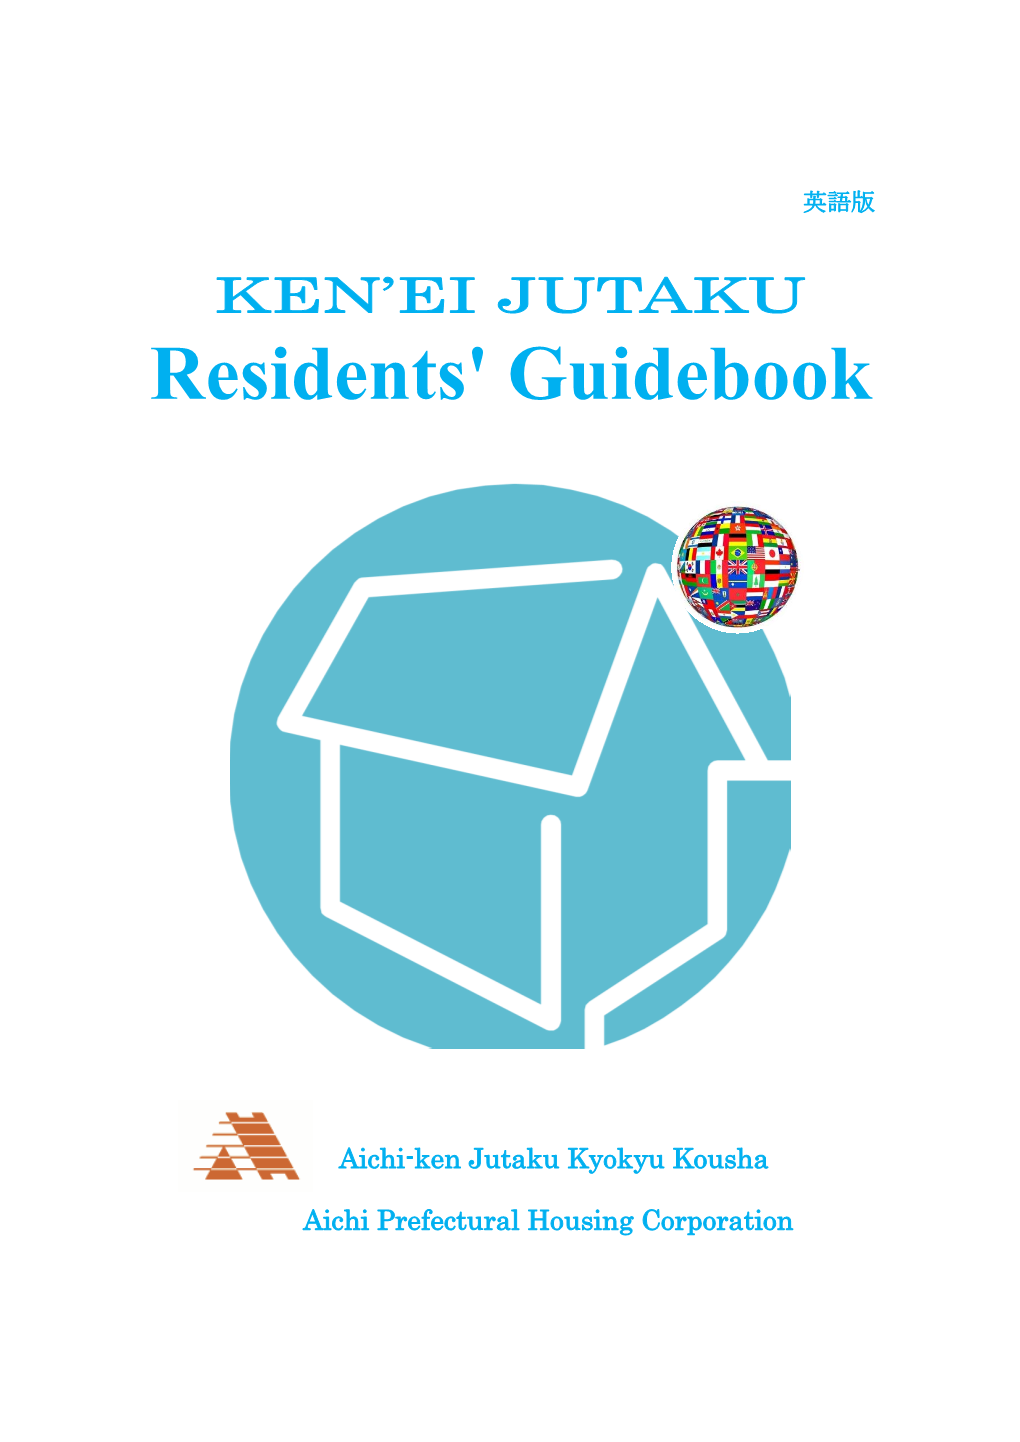 Residents' Guidebook